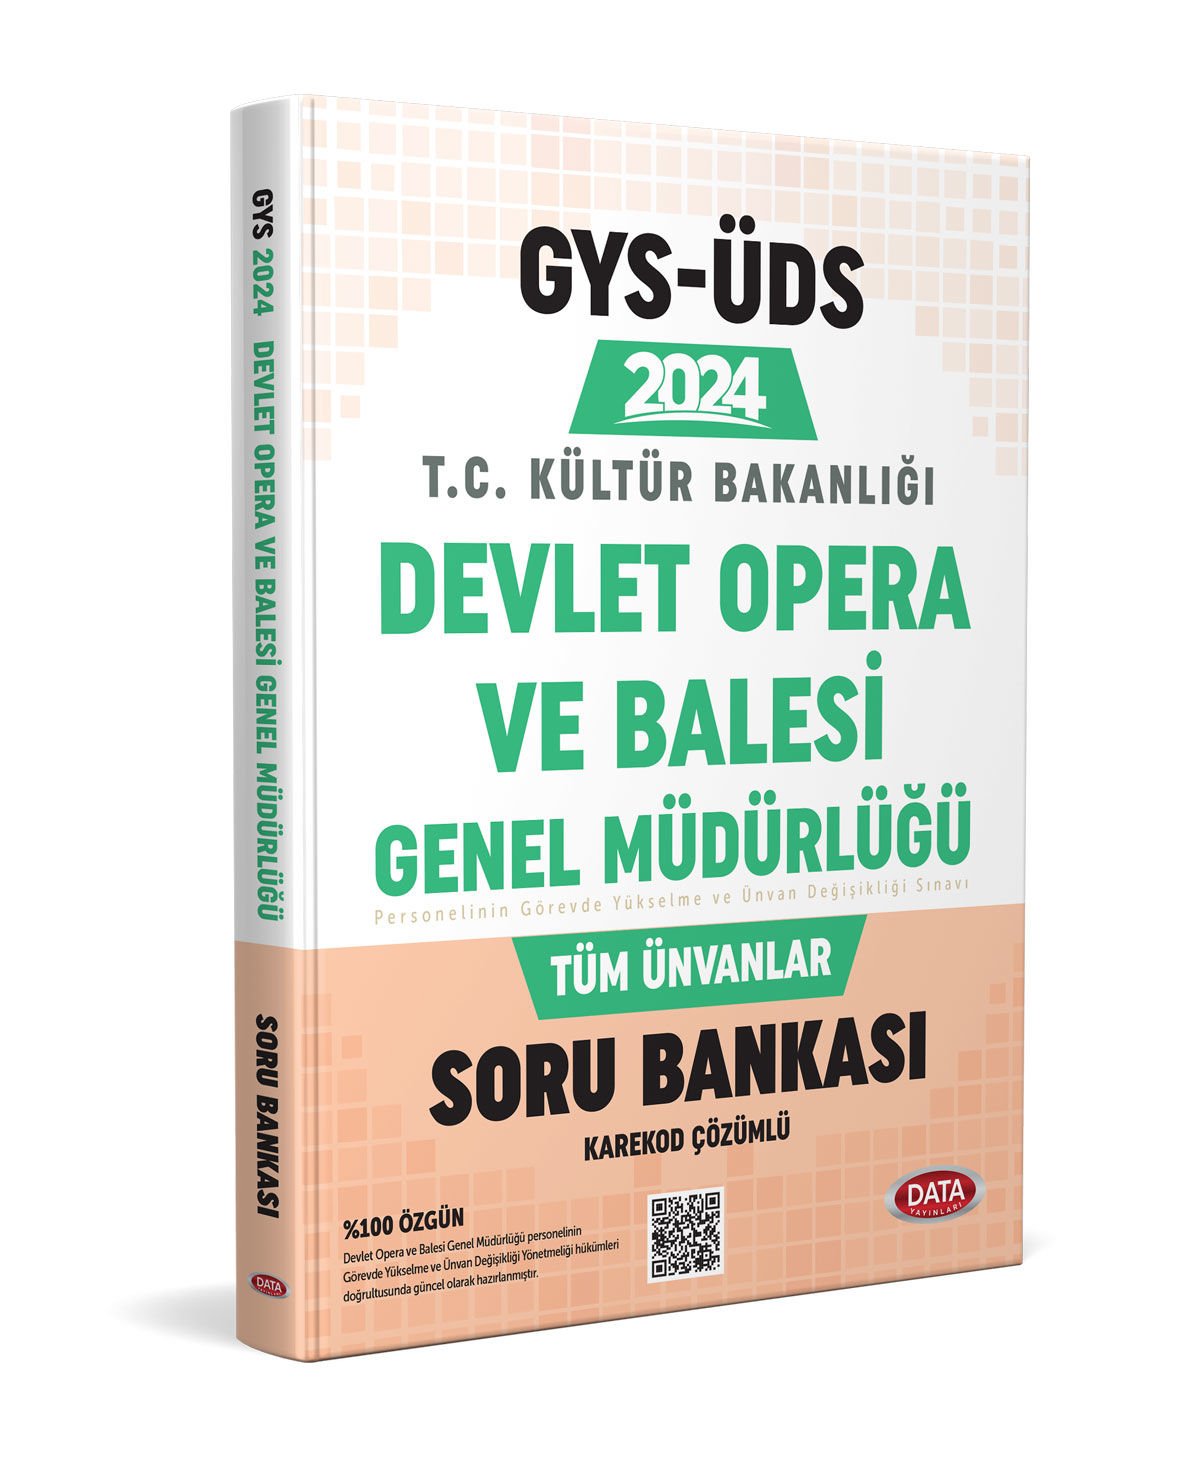 Devlet Opera Ve Bale Genel Müdürlüğü GYS-ÜDS Soru Bankası - Karekod Çözümlü